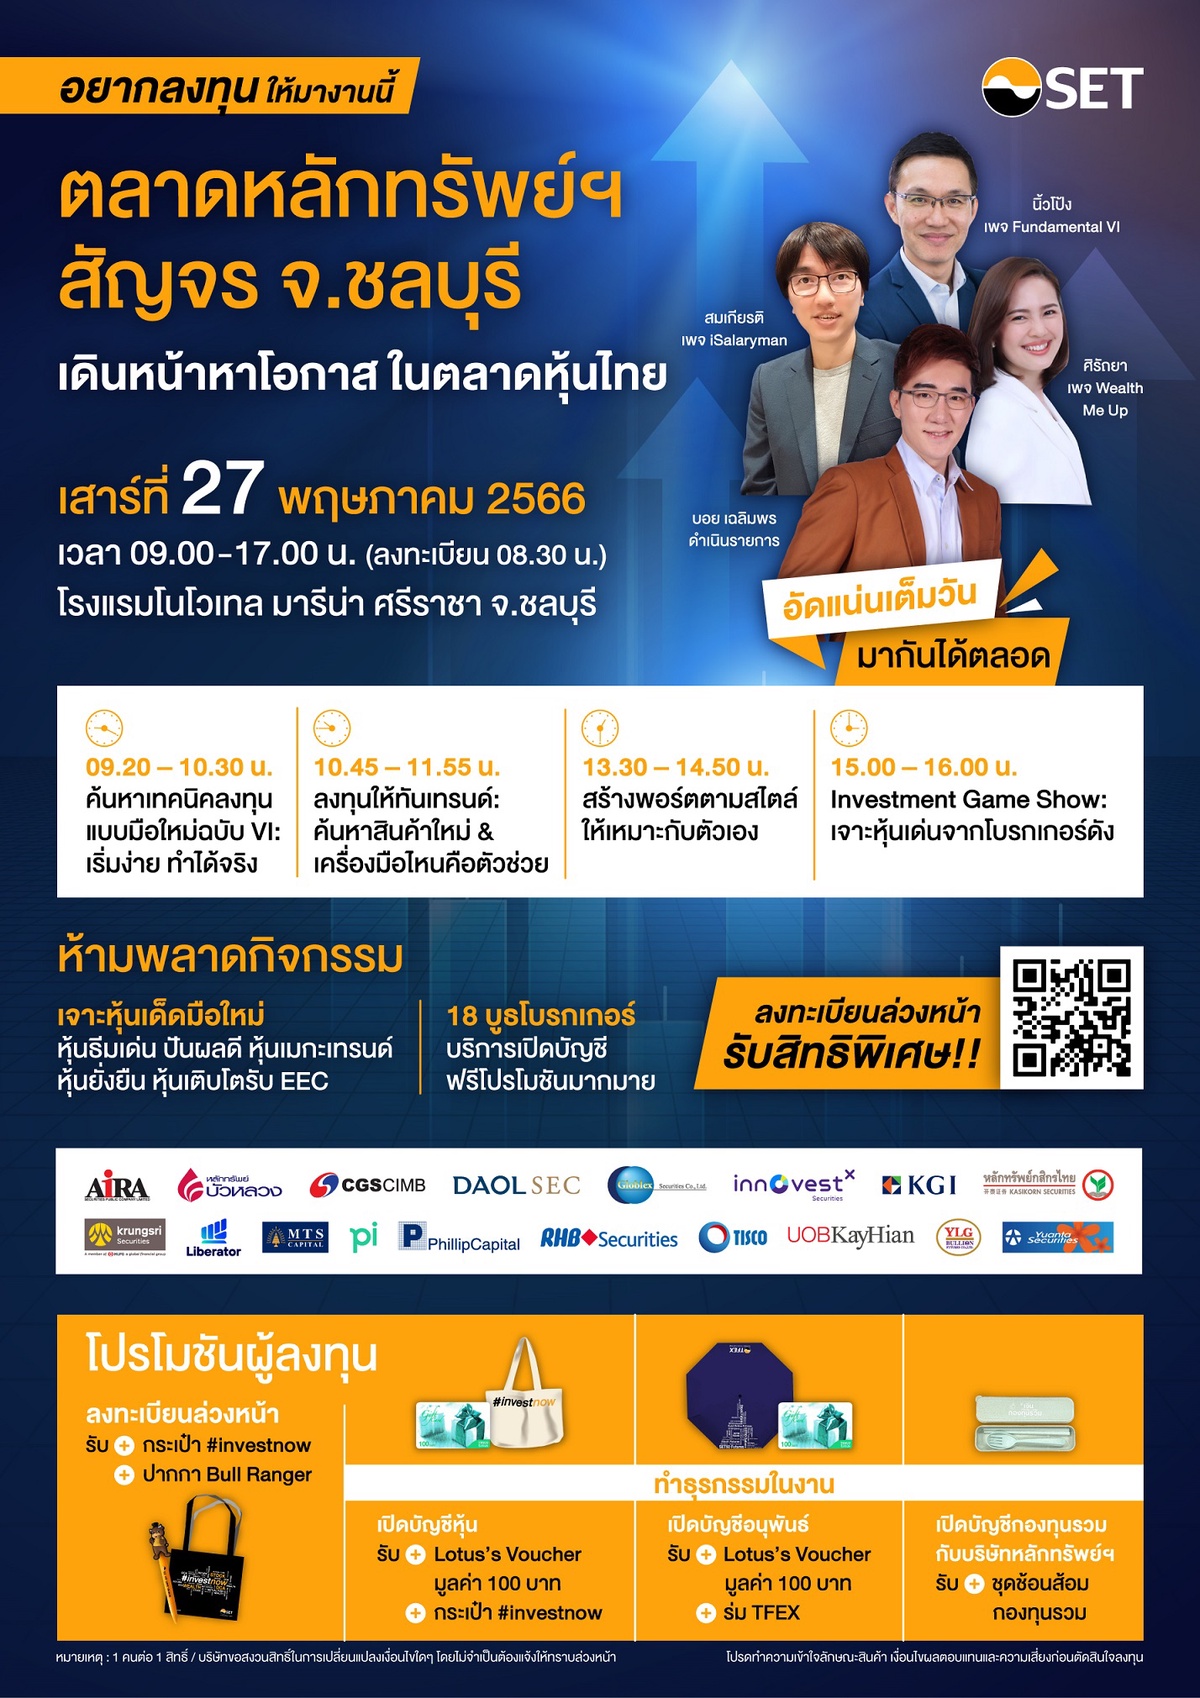 ตลาดหลักทรัพย์ฯ สัญจร ชวนชาวชลบุรี เดินหน้าหาโอกาส ในตลาดหุ้นไทย เสาร์ 27 พ.ค. นี้